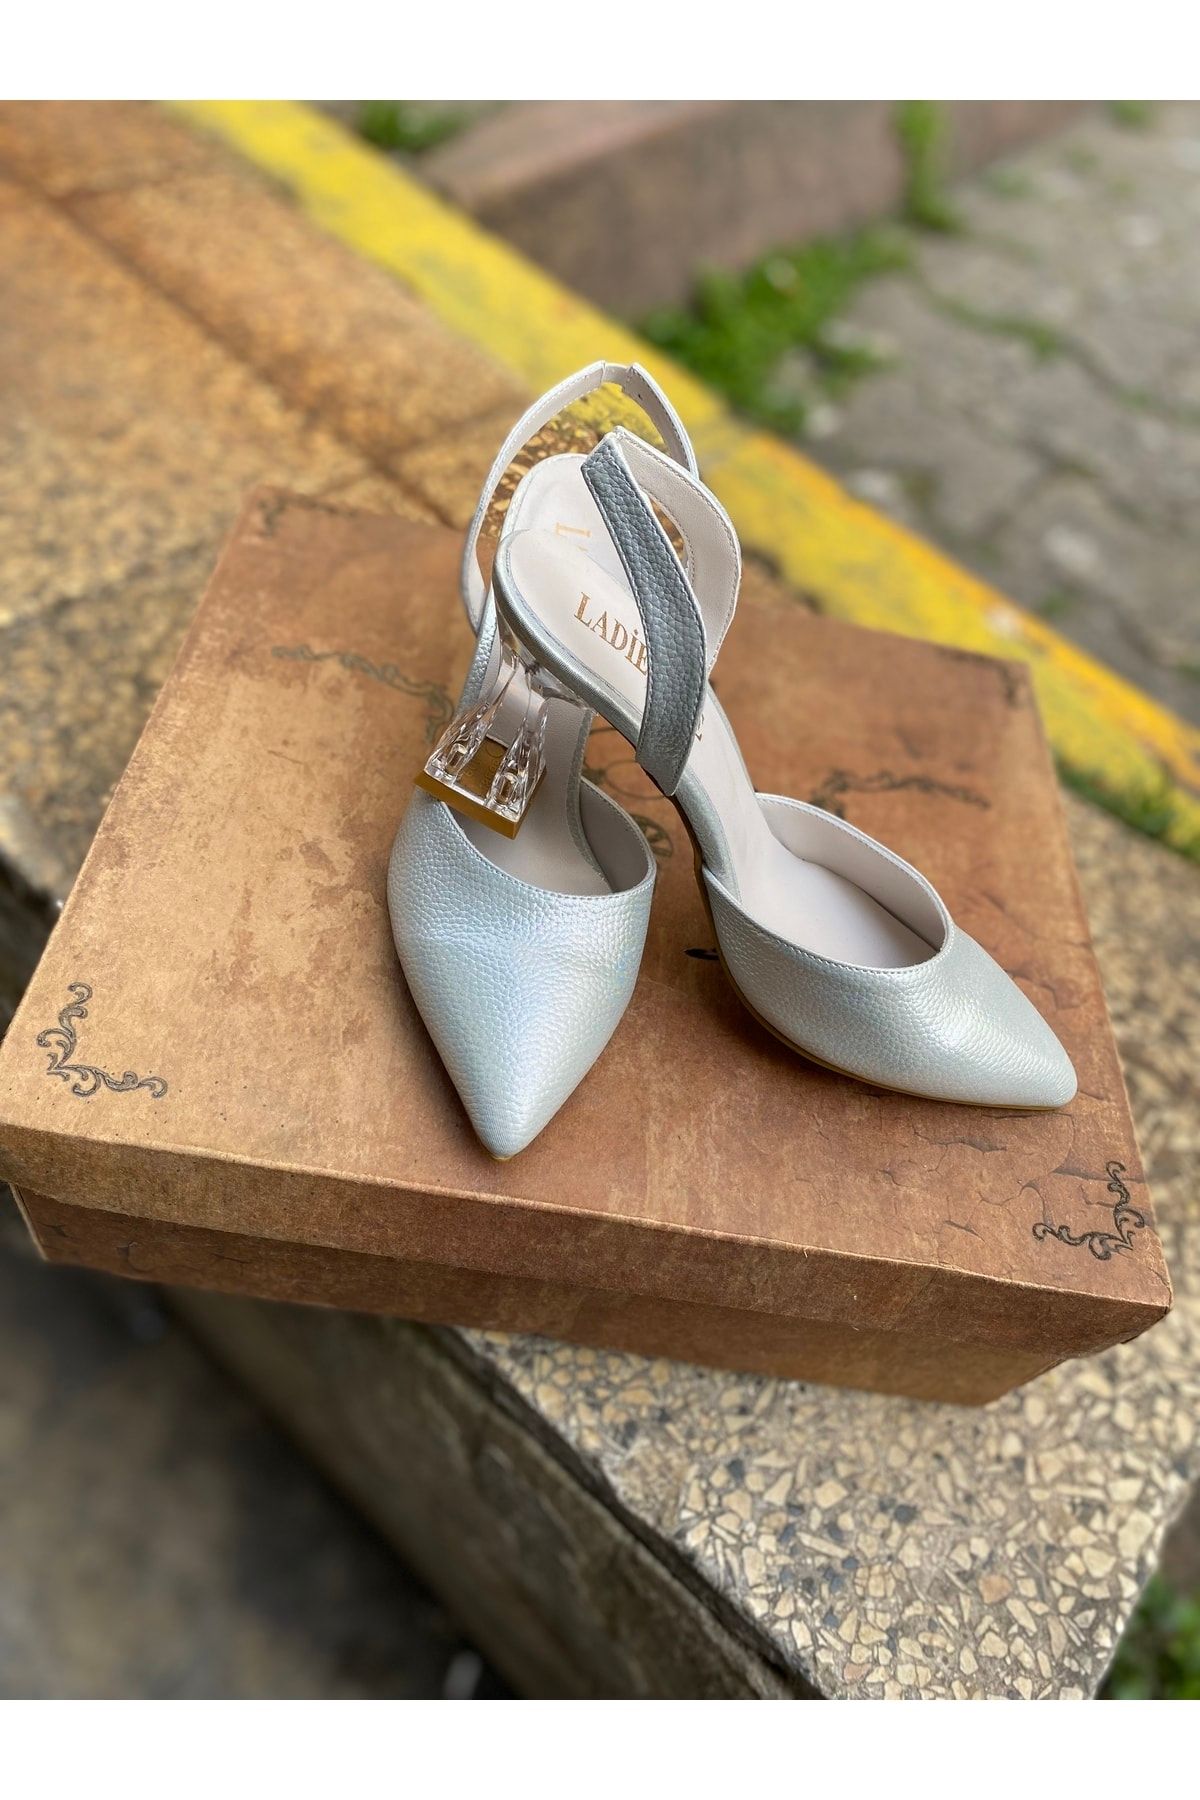 LADİESHOE Şeffaf Topuk Arka Bantlı Kadın Ayakkabı Stiletto